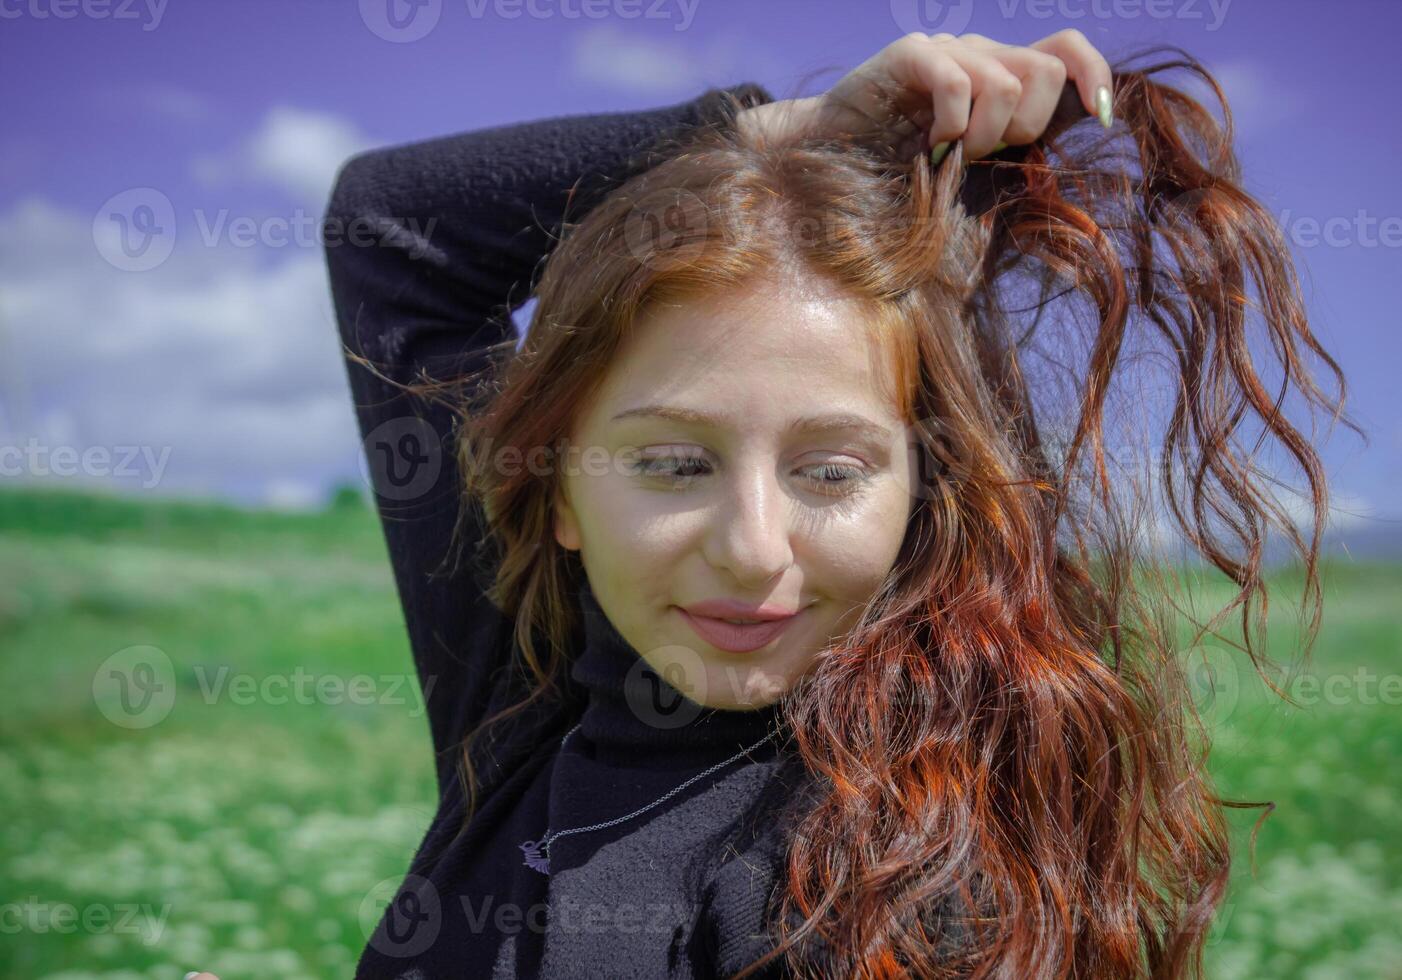 rouge aux cheveux femme dans le parc, jolie femme dans le la nature photo